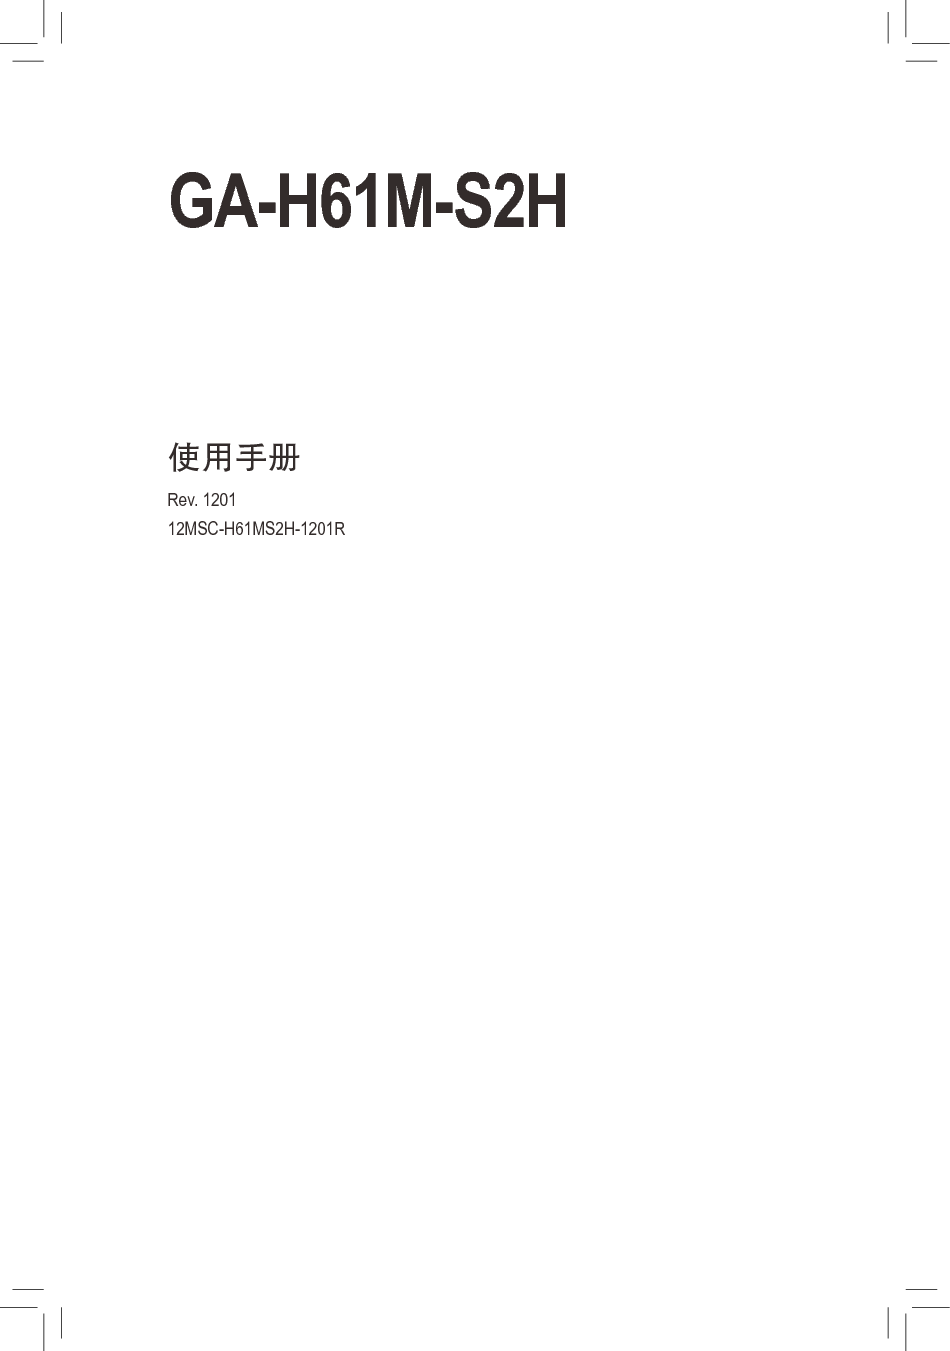 技嘉 Gigabyte GA-H61M-S2H 1201版 使用手册 封面